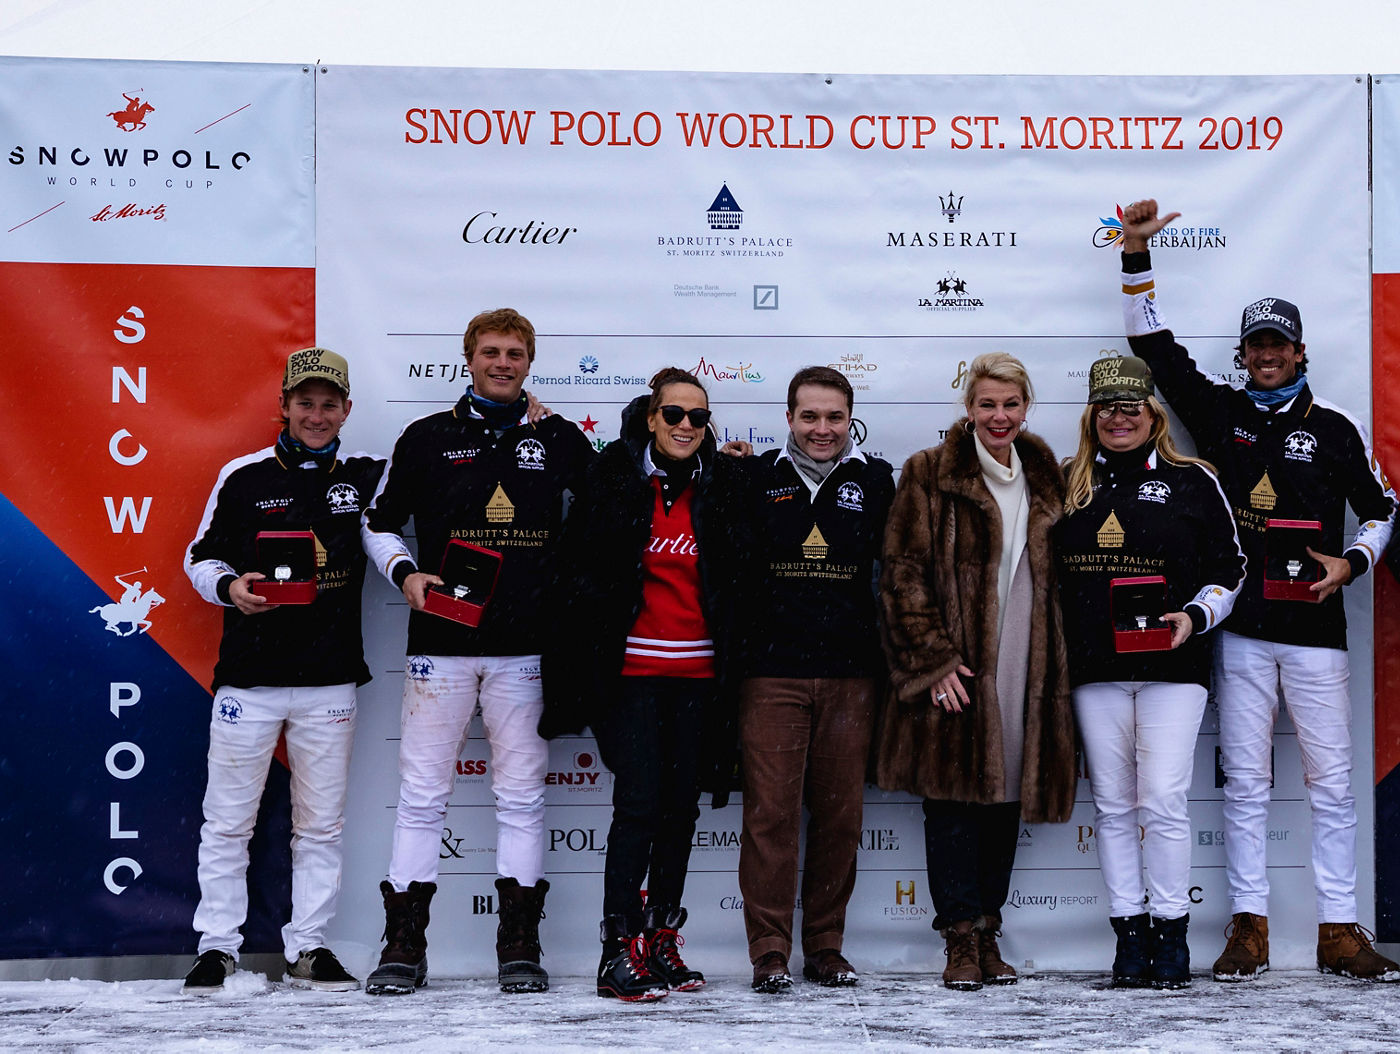 Equipo Badrutt's Palace gana el Snow Polo World Cup en St Moritz en 2019